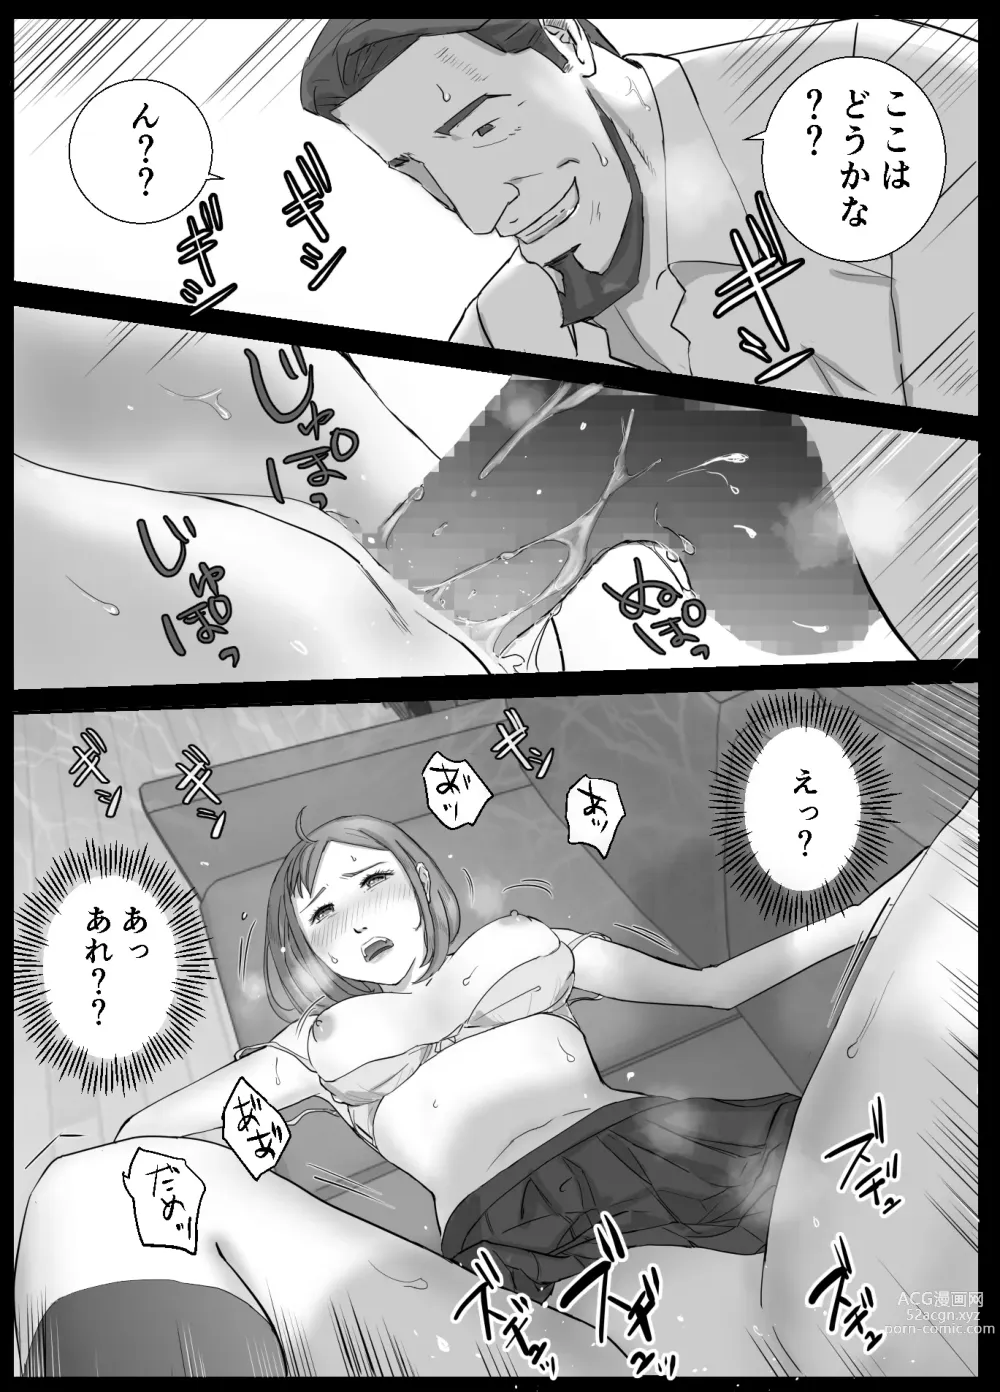 Page 30 of doujinshi Ano Hi no Uso 1